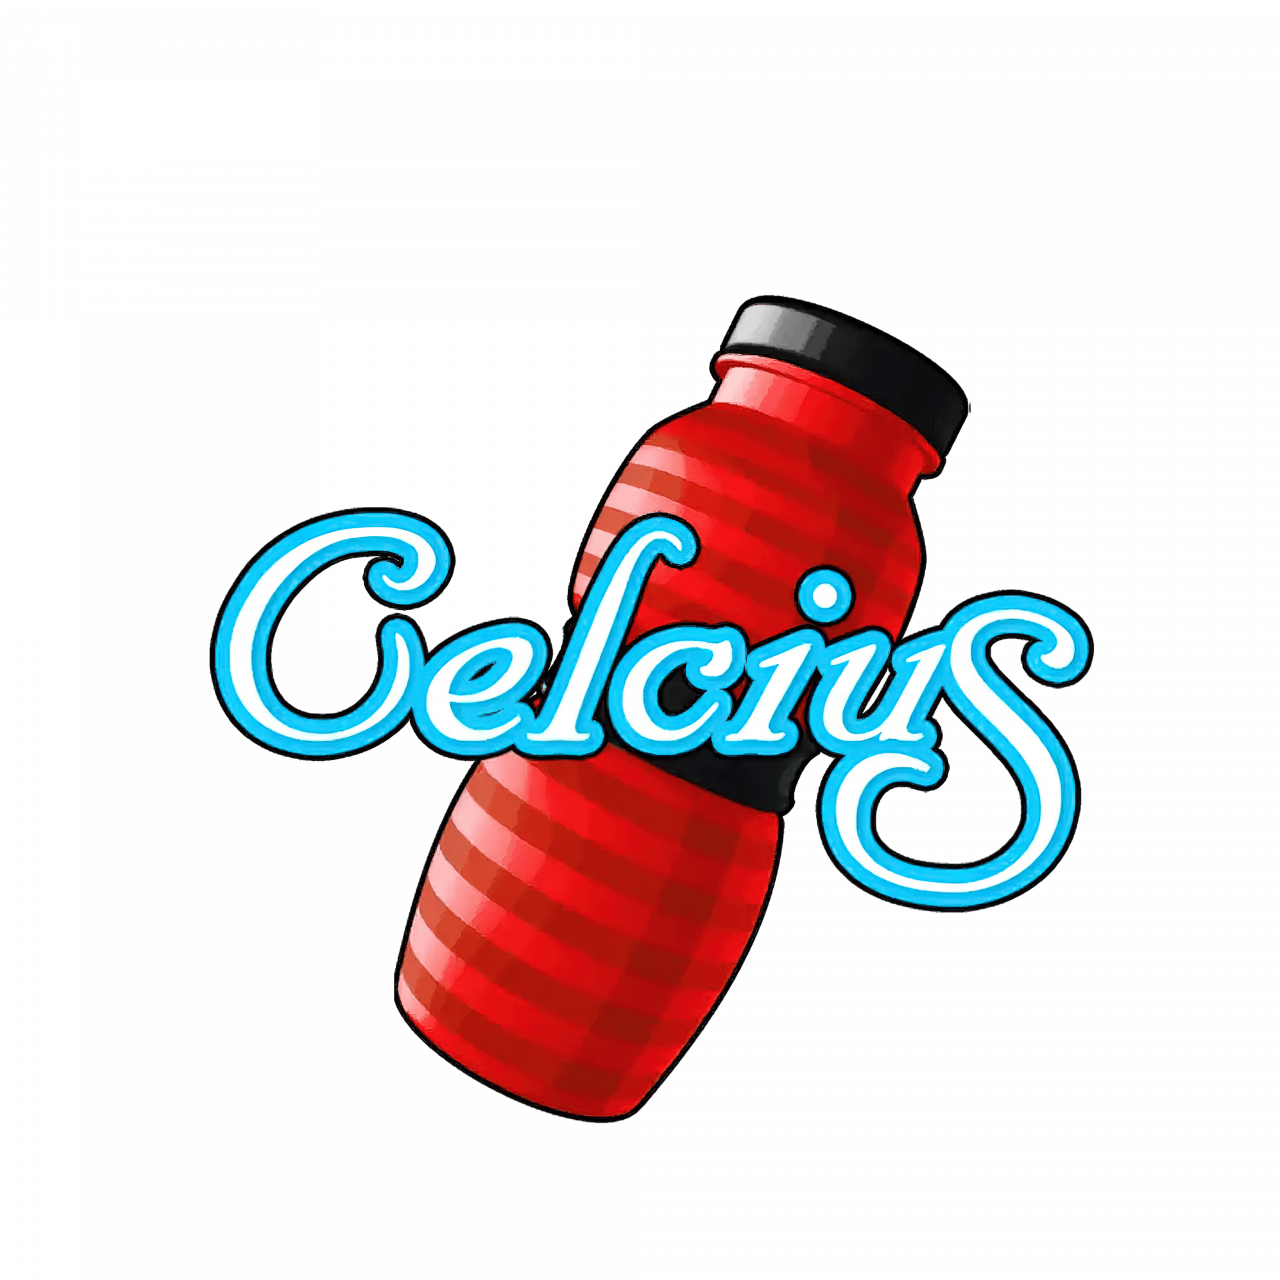 Celcius – Logo